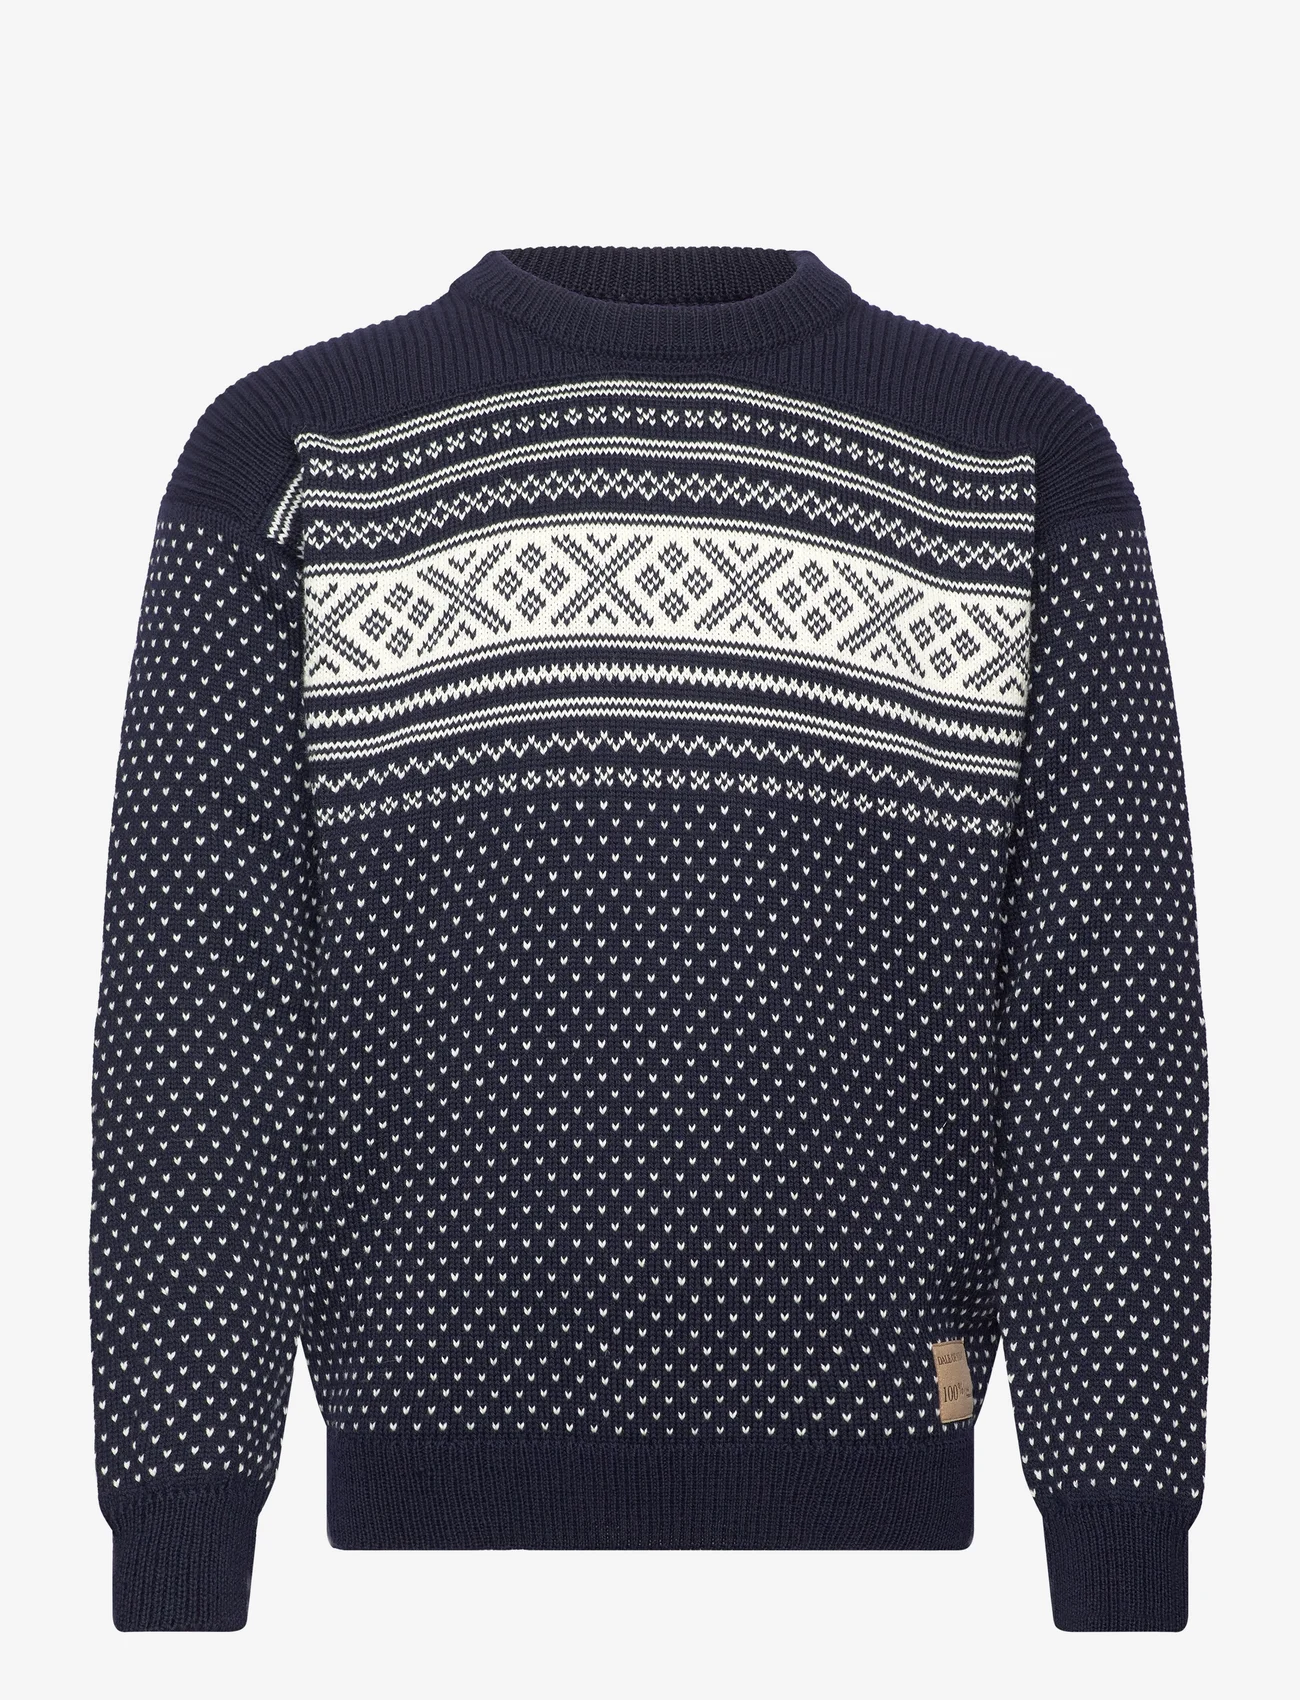 Dale of Norway - Valløy masculine sweater - rund hals - c00 - 0